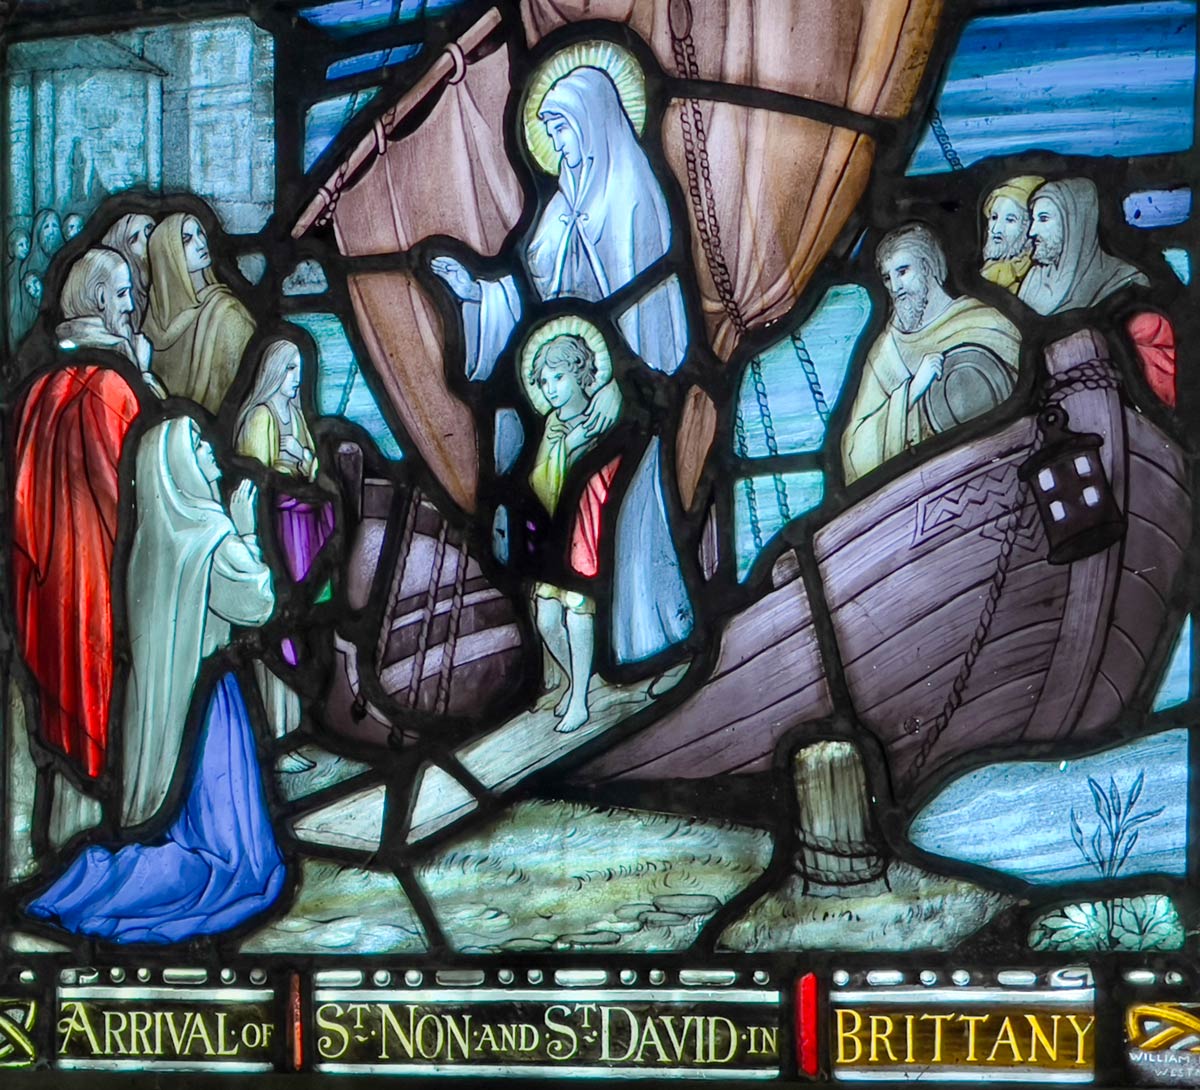 Finestra di vetro colorato che mostra l'arrivo di St Non e St David in Bretagna, St Non's Chapel, St David's